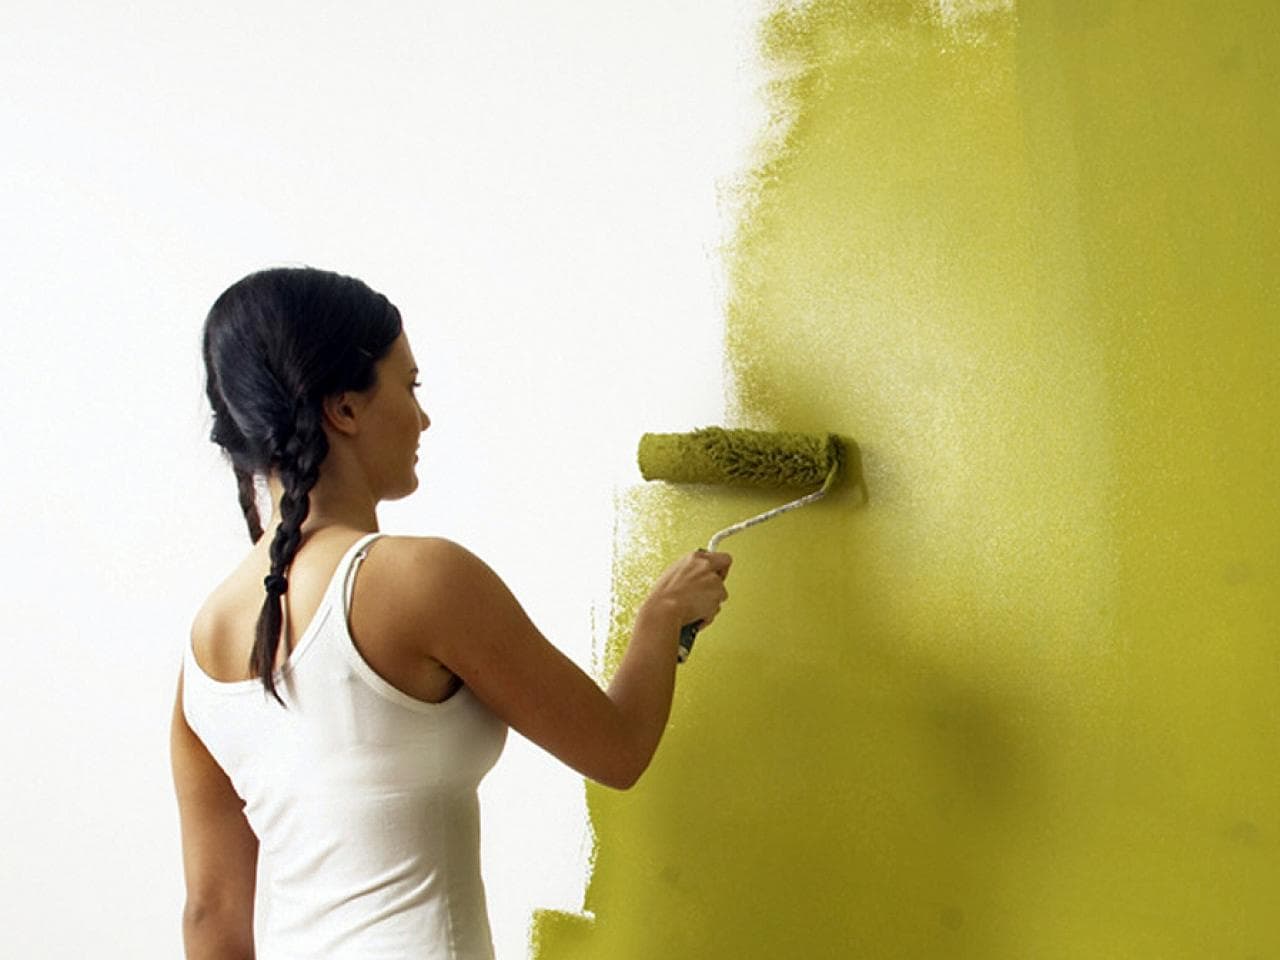 Лучшие краски для покраски обоев. Краска для стен. Покрашенные стены. Красивая краска для стен. Окрашивание неровных стен.